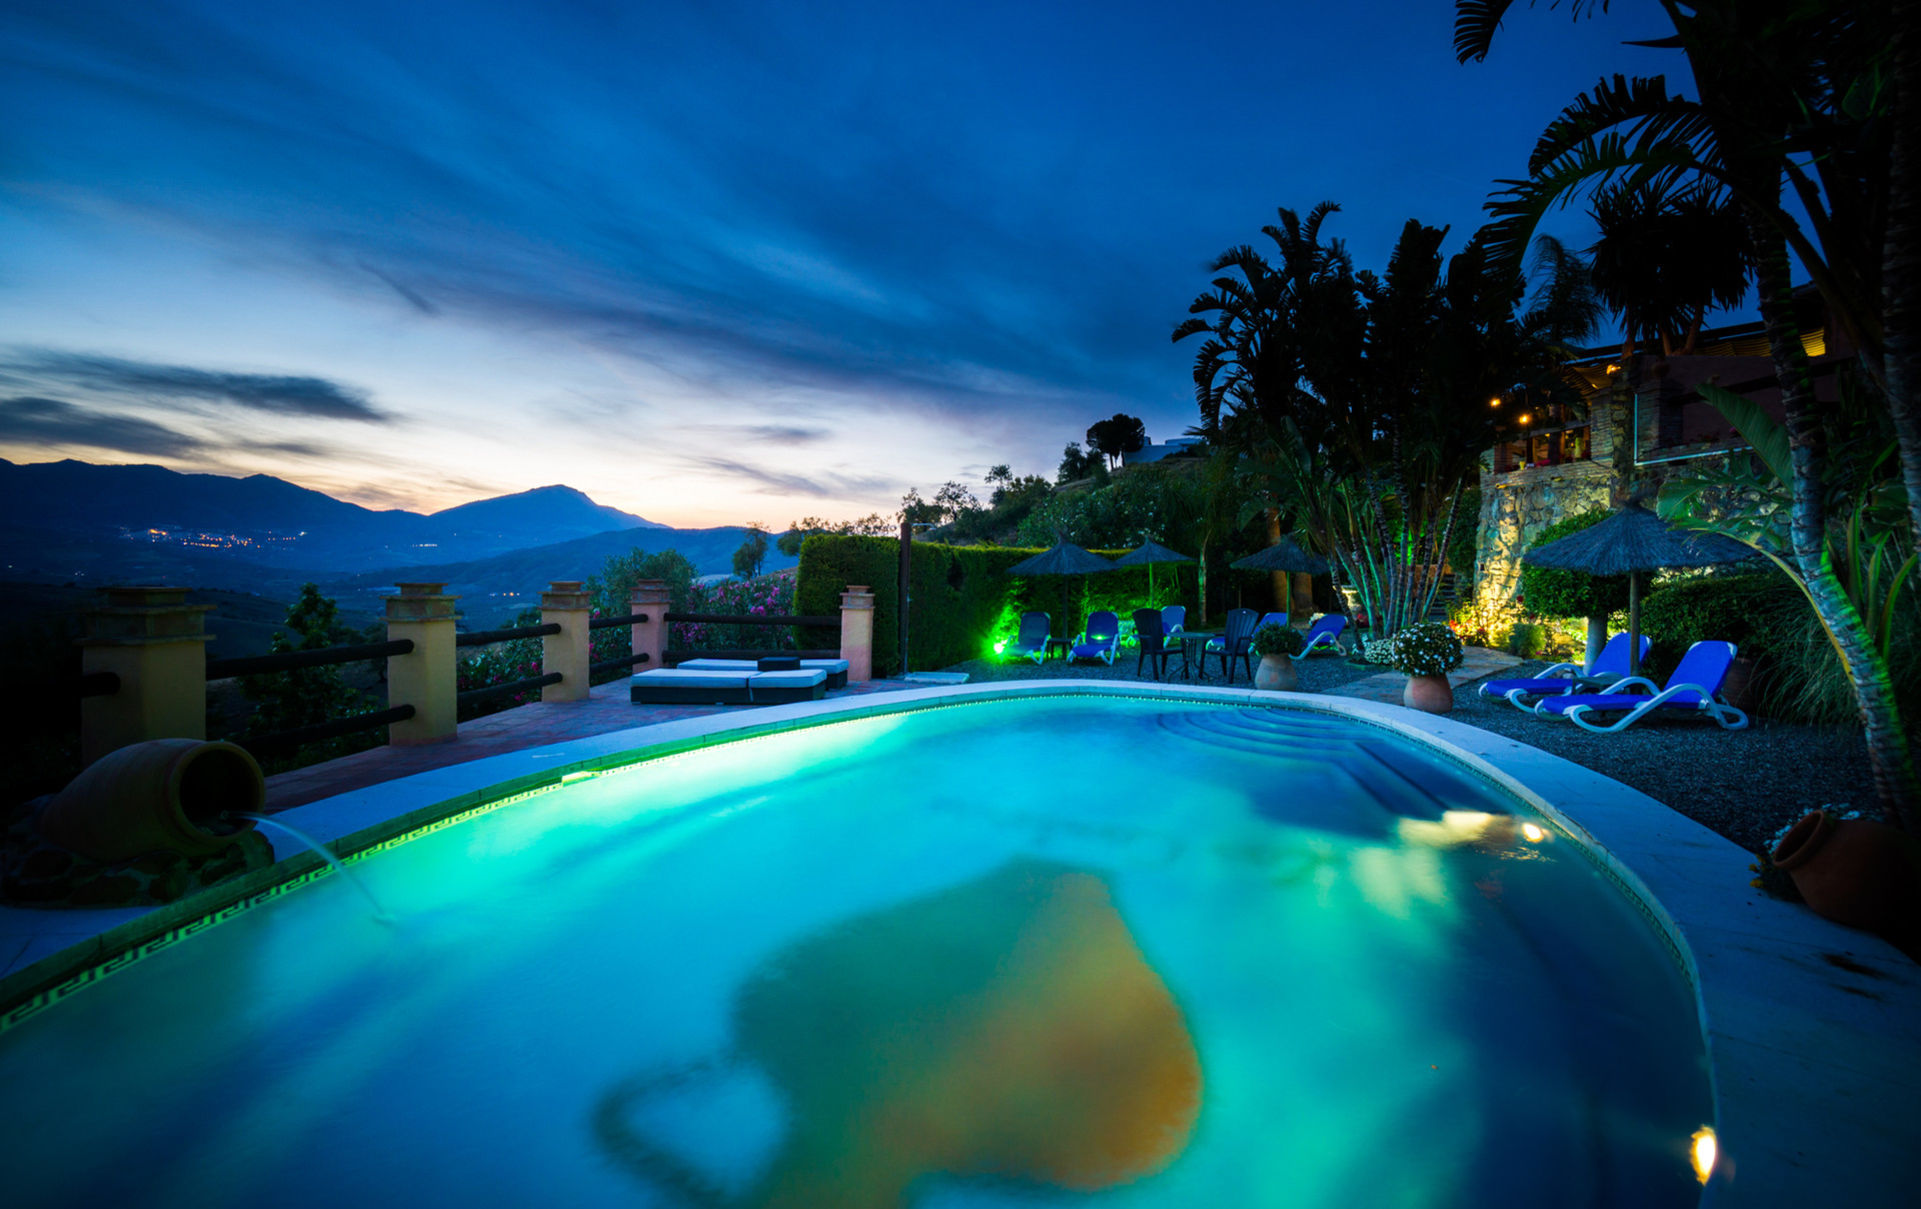 Vista de la piscina al anochecer, con iluminación en el jardín e impresionantes vistas del valle